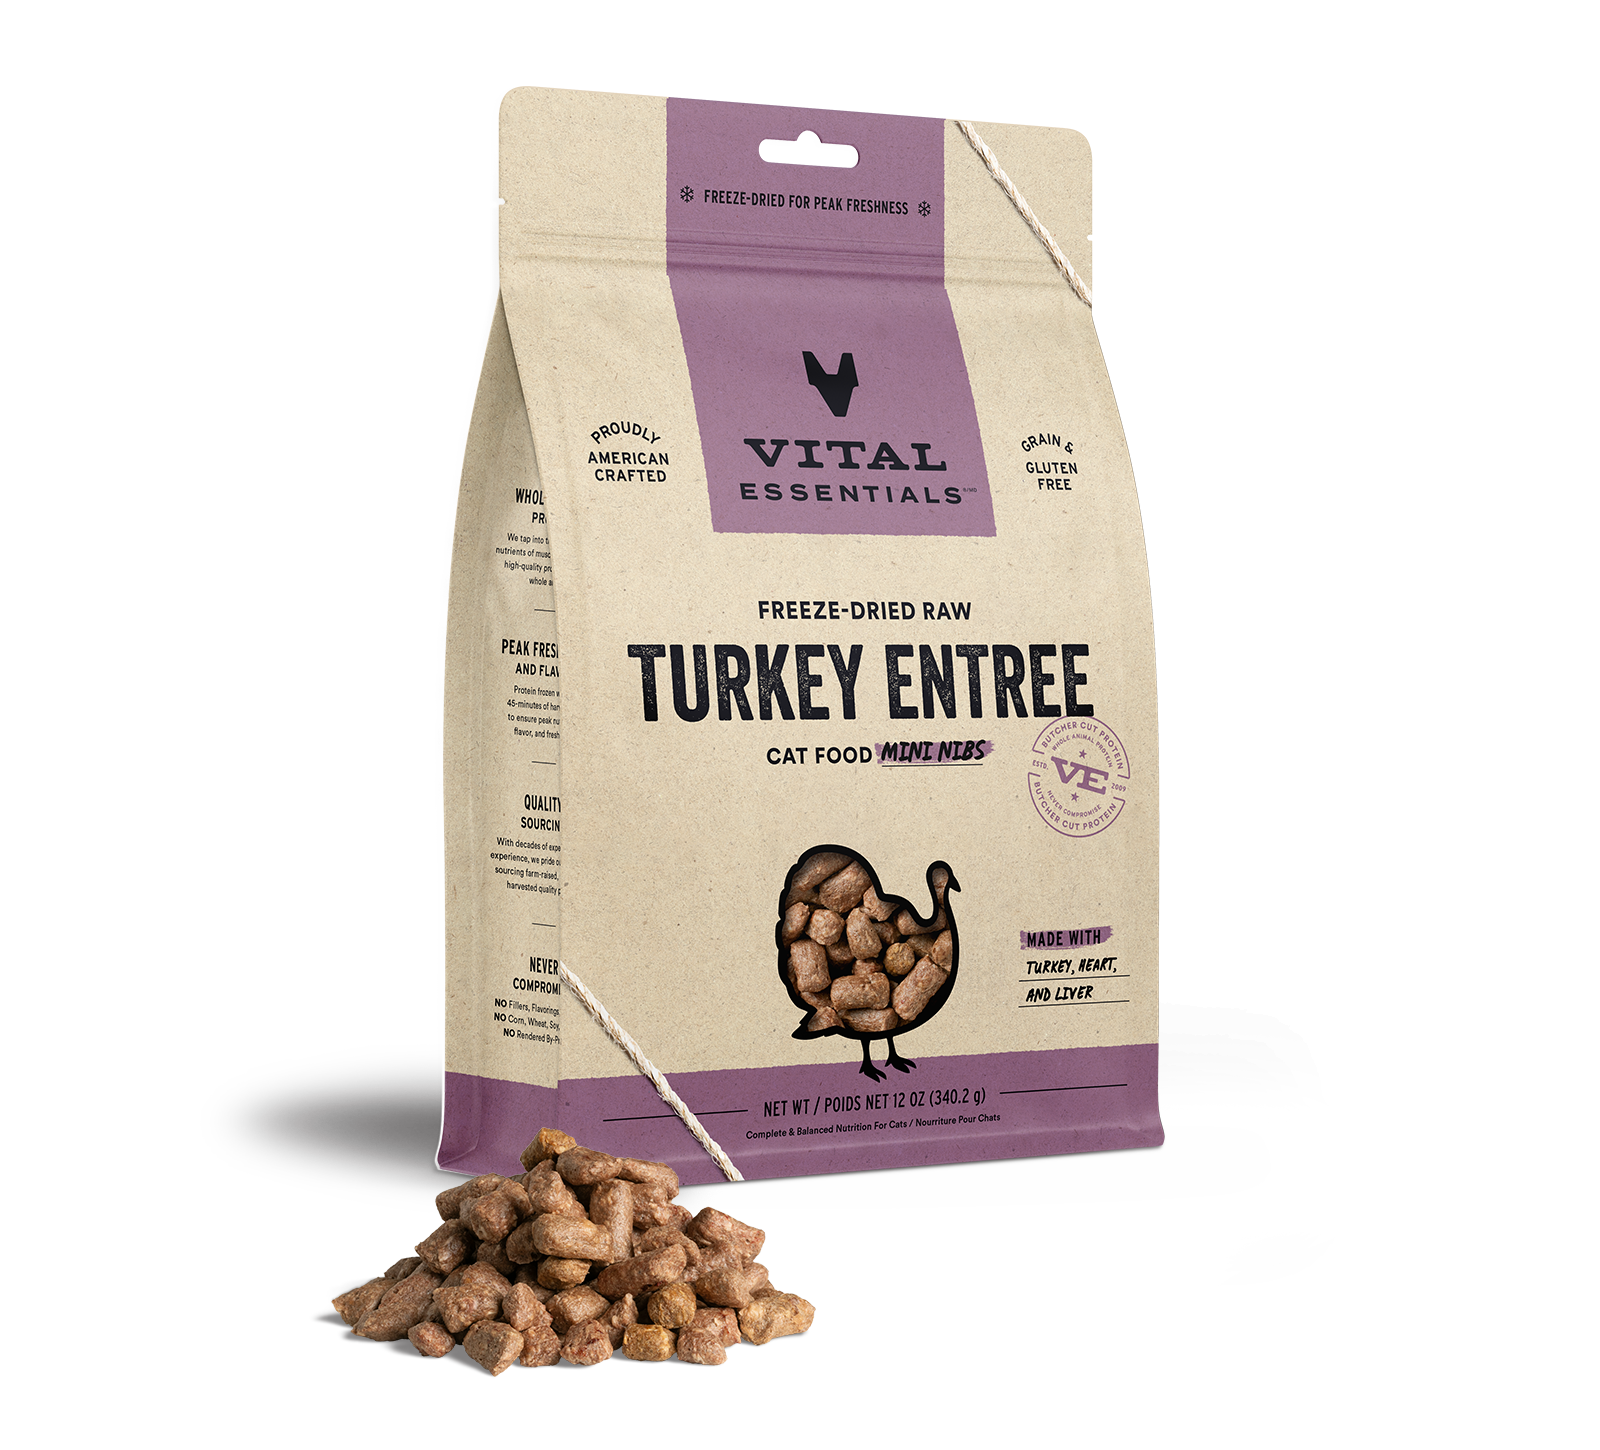 Vital Essentials Freeze-Dried Raw Turkey Entree Cat Food Mini Nibs, 12 oz - Health/First Aid